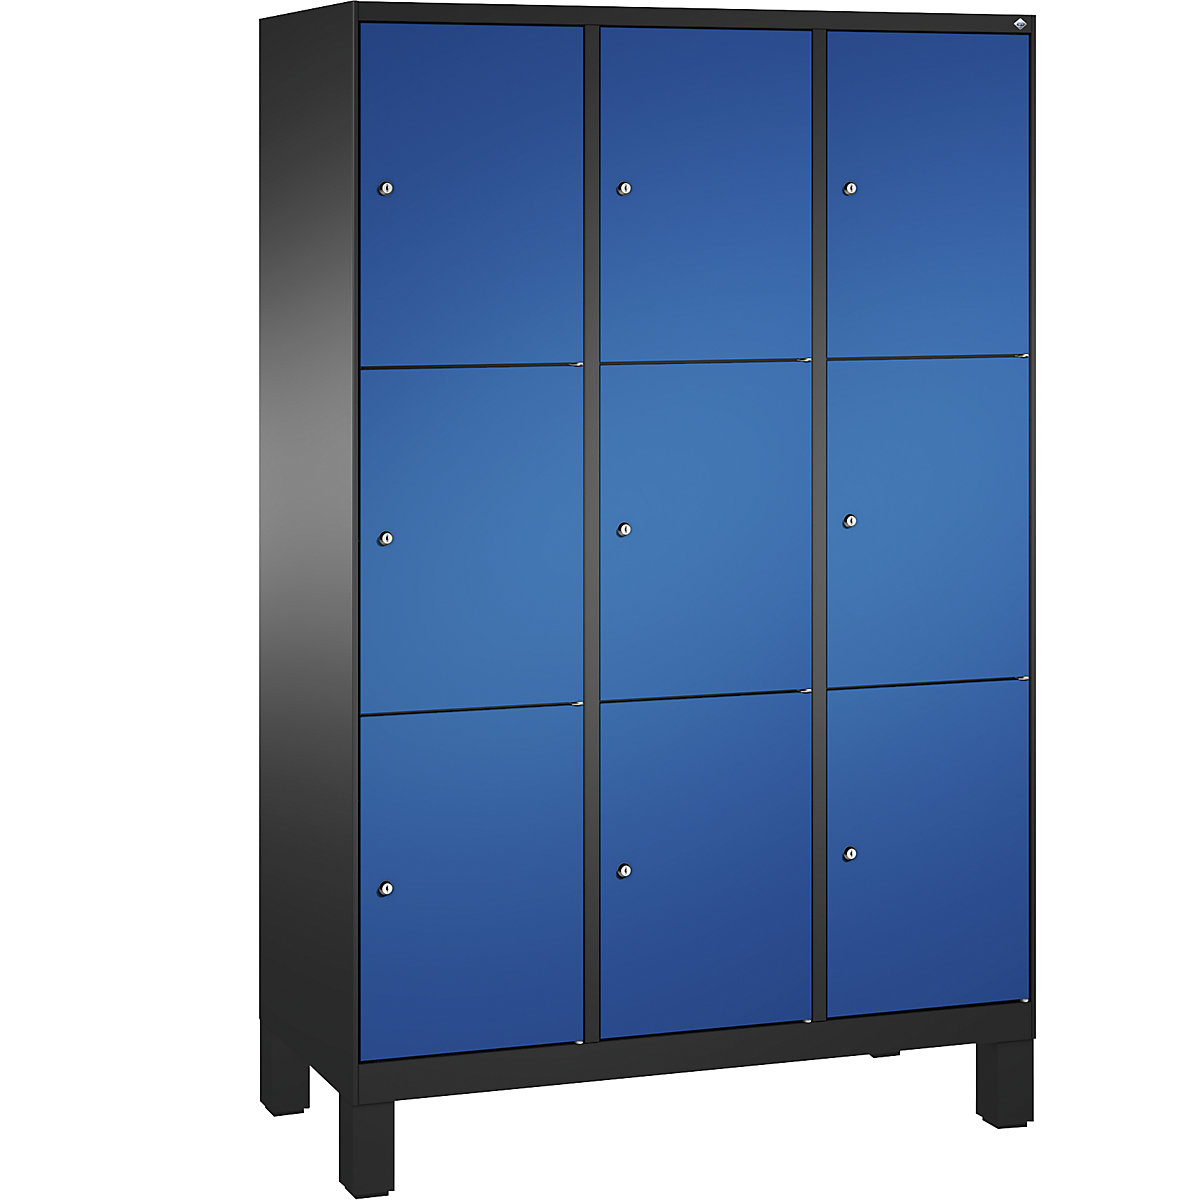 Armoire à casiers sur pieds EVOLO – C+P, 3 compartiments, 3 casiers chacun, largeur compartiments 400 mm, gris noir / bleu gentiane-8